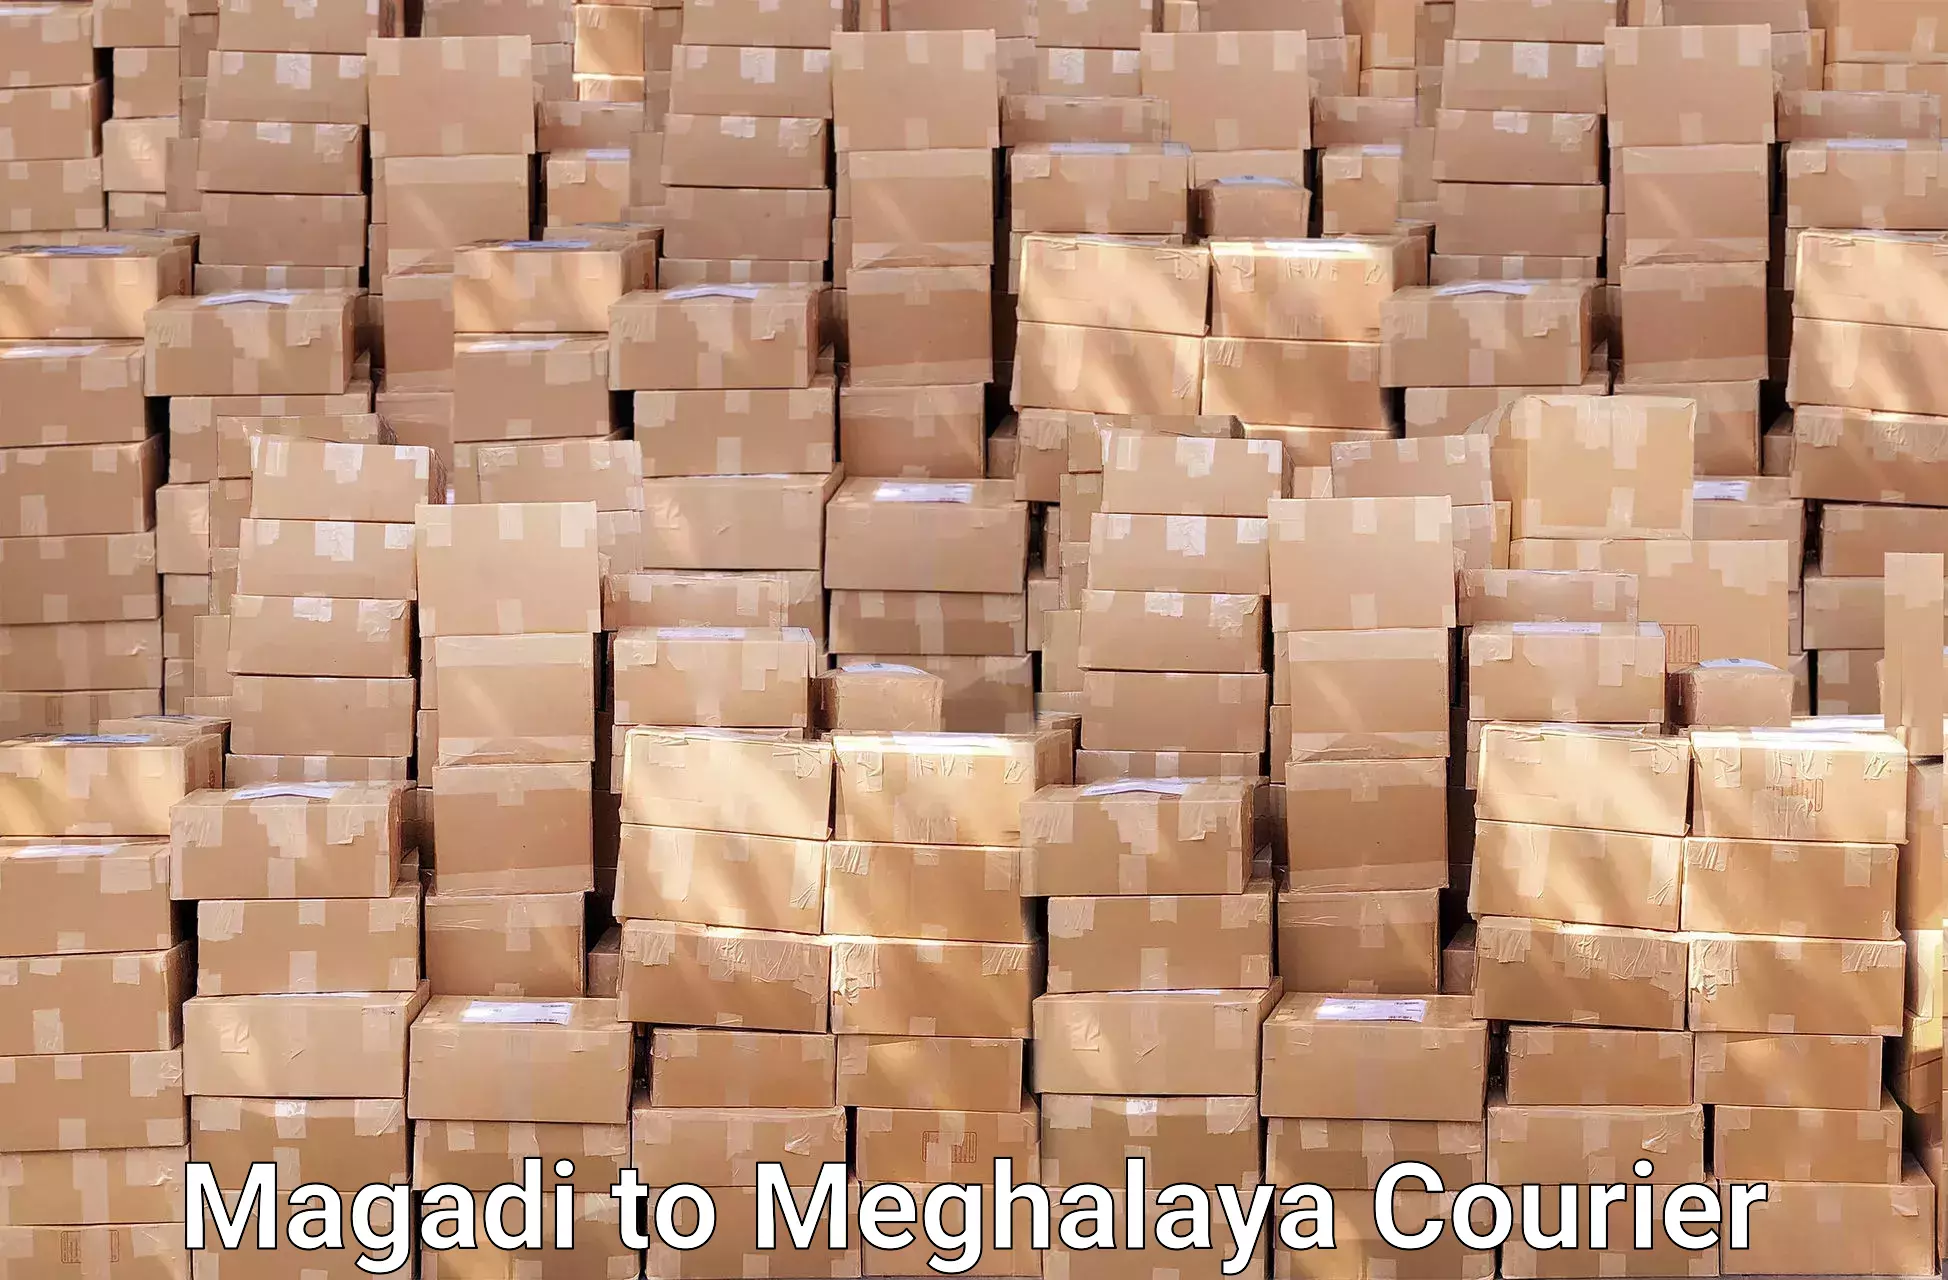 Efficient moving company Magadi to Shillong